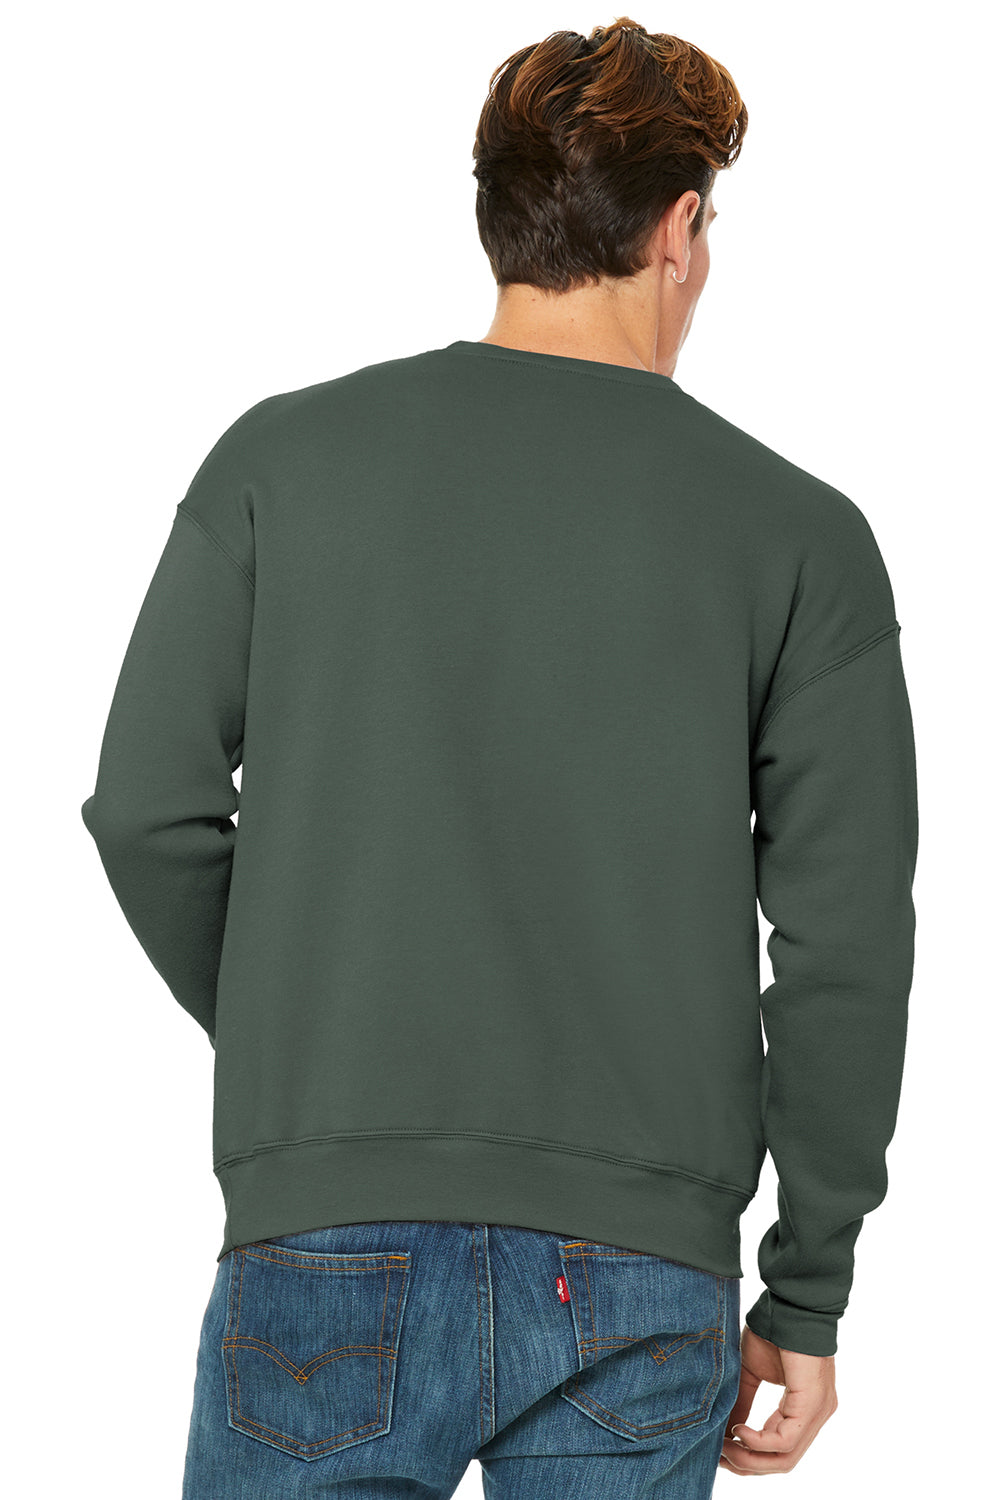 Bella + Canvas BC3945/3945 Mens Fleece Crewneck Sweatshirt Military Green Model Back